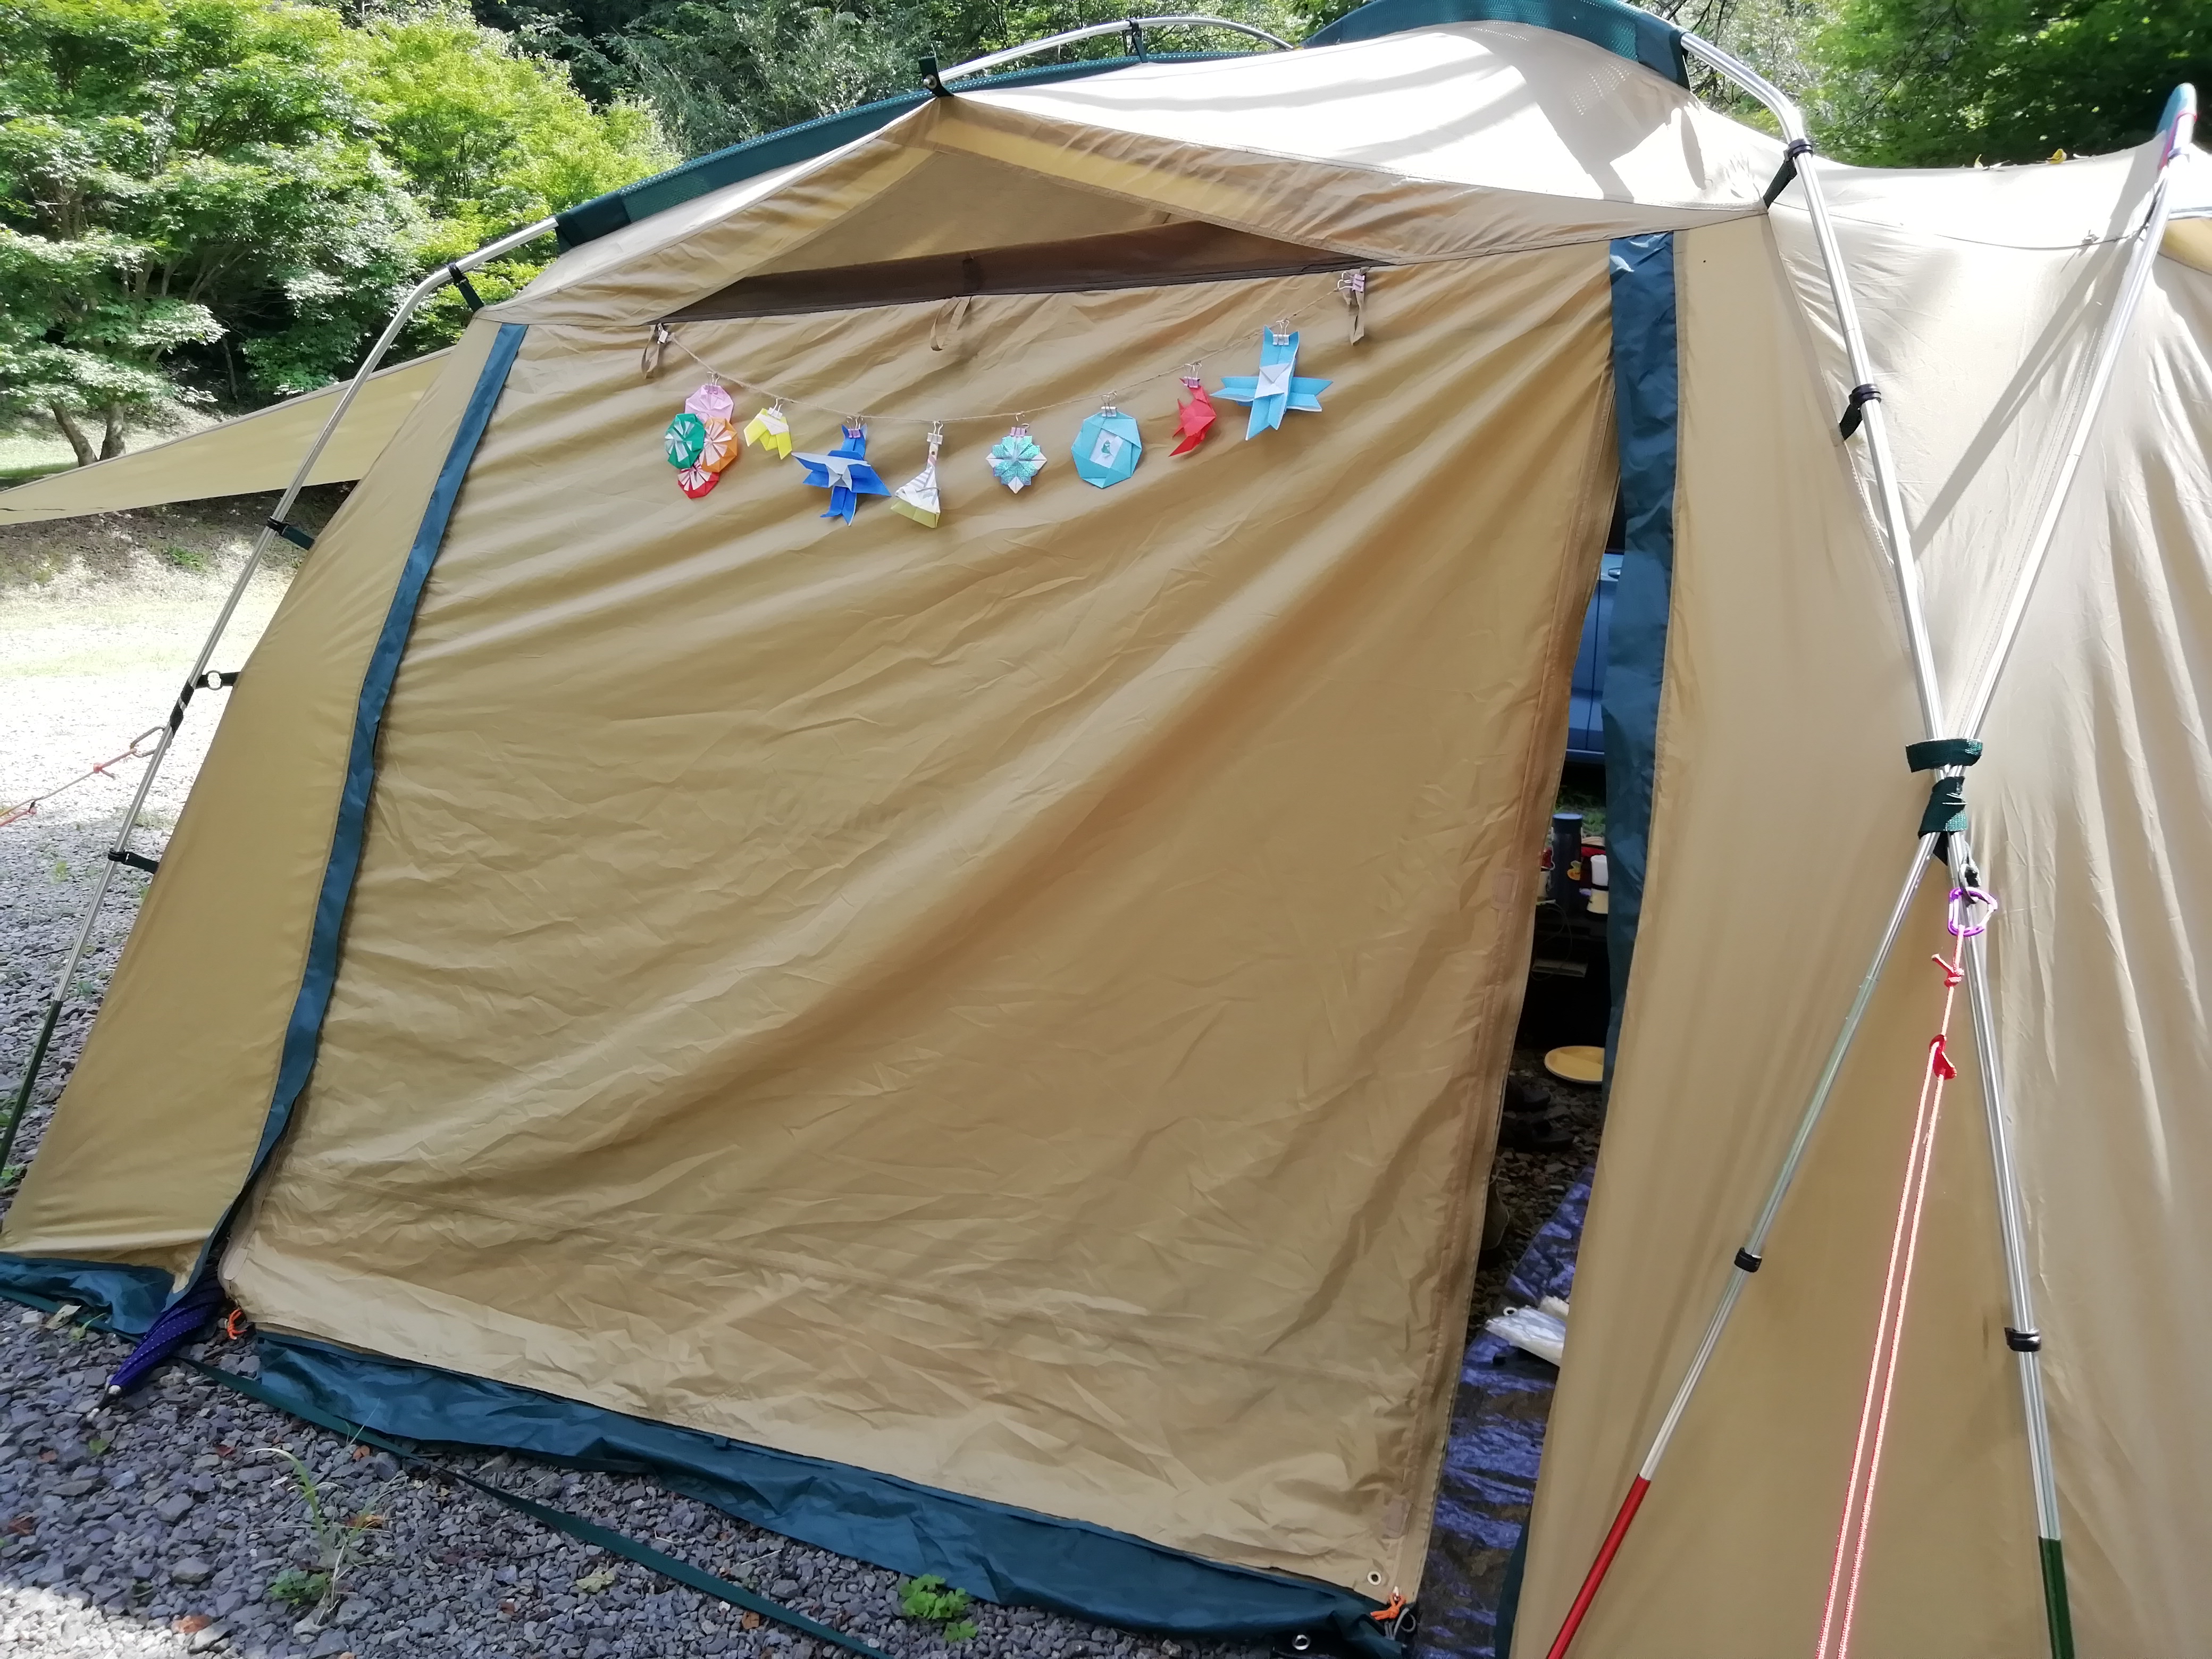 キャンプで手作りガーランド 子供と一緒に折り紙でテントを飾ろう ニガテなキャンプに 行ってみた